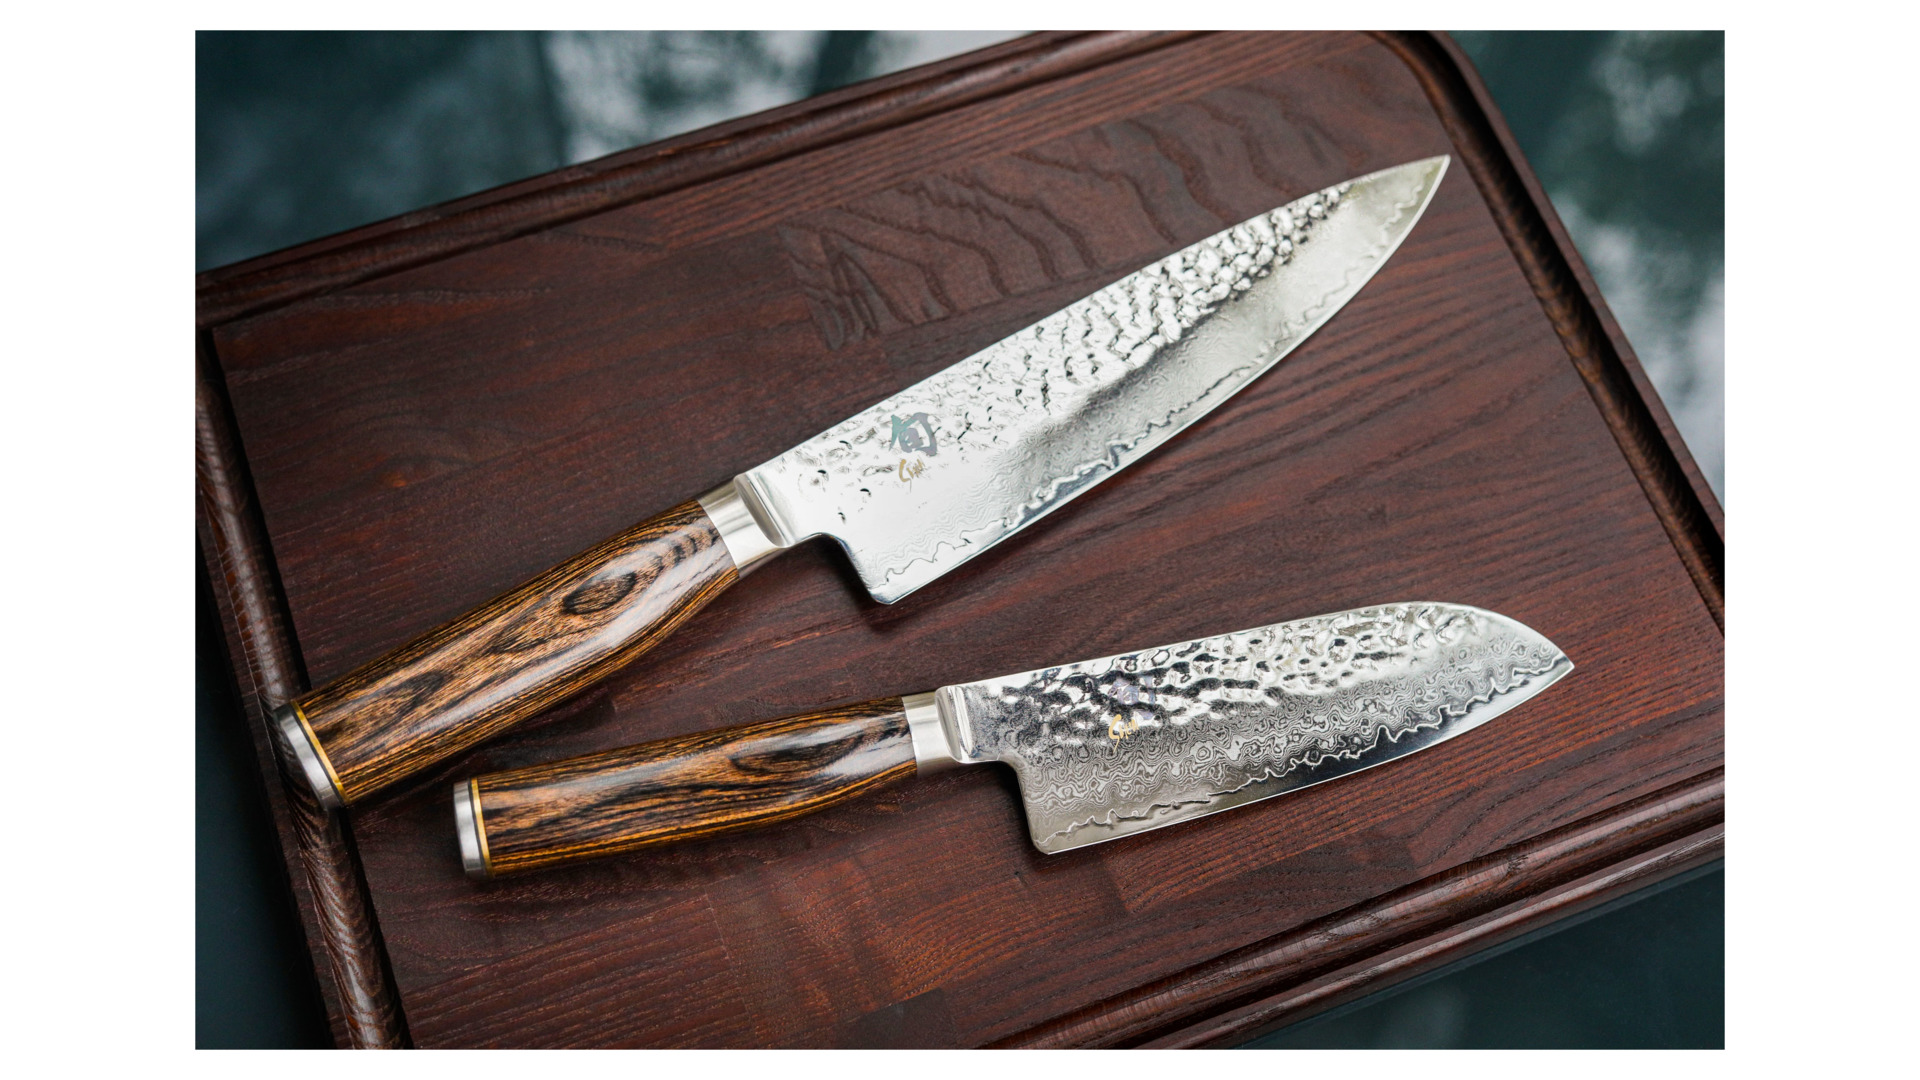 Нож поварской Сантоку KAI Шан Премьер 18 см, ручка дерева пакка